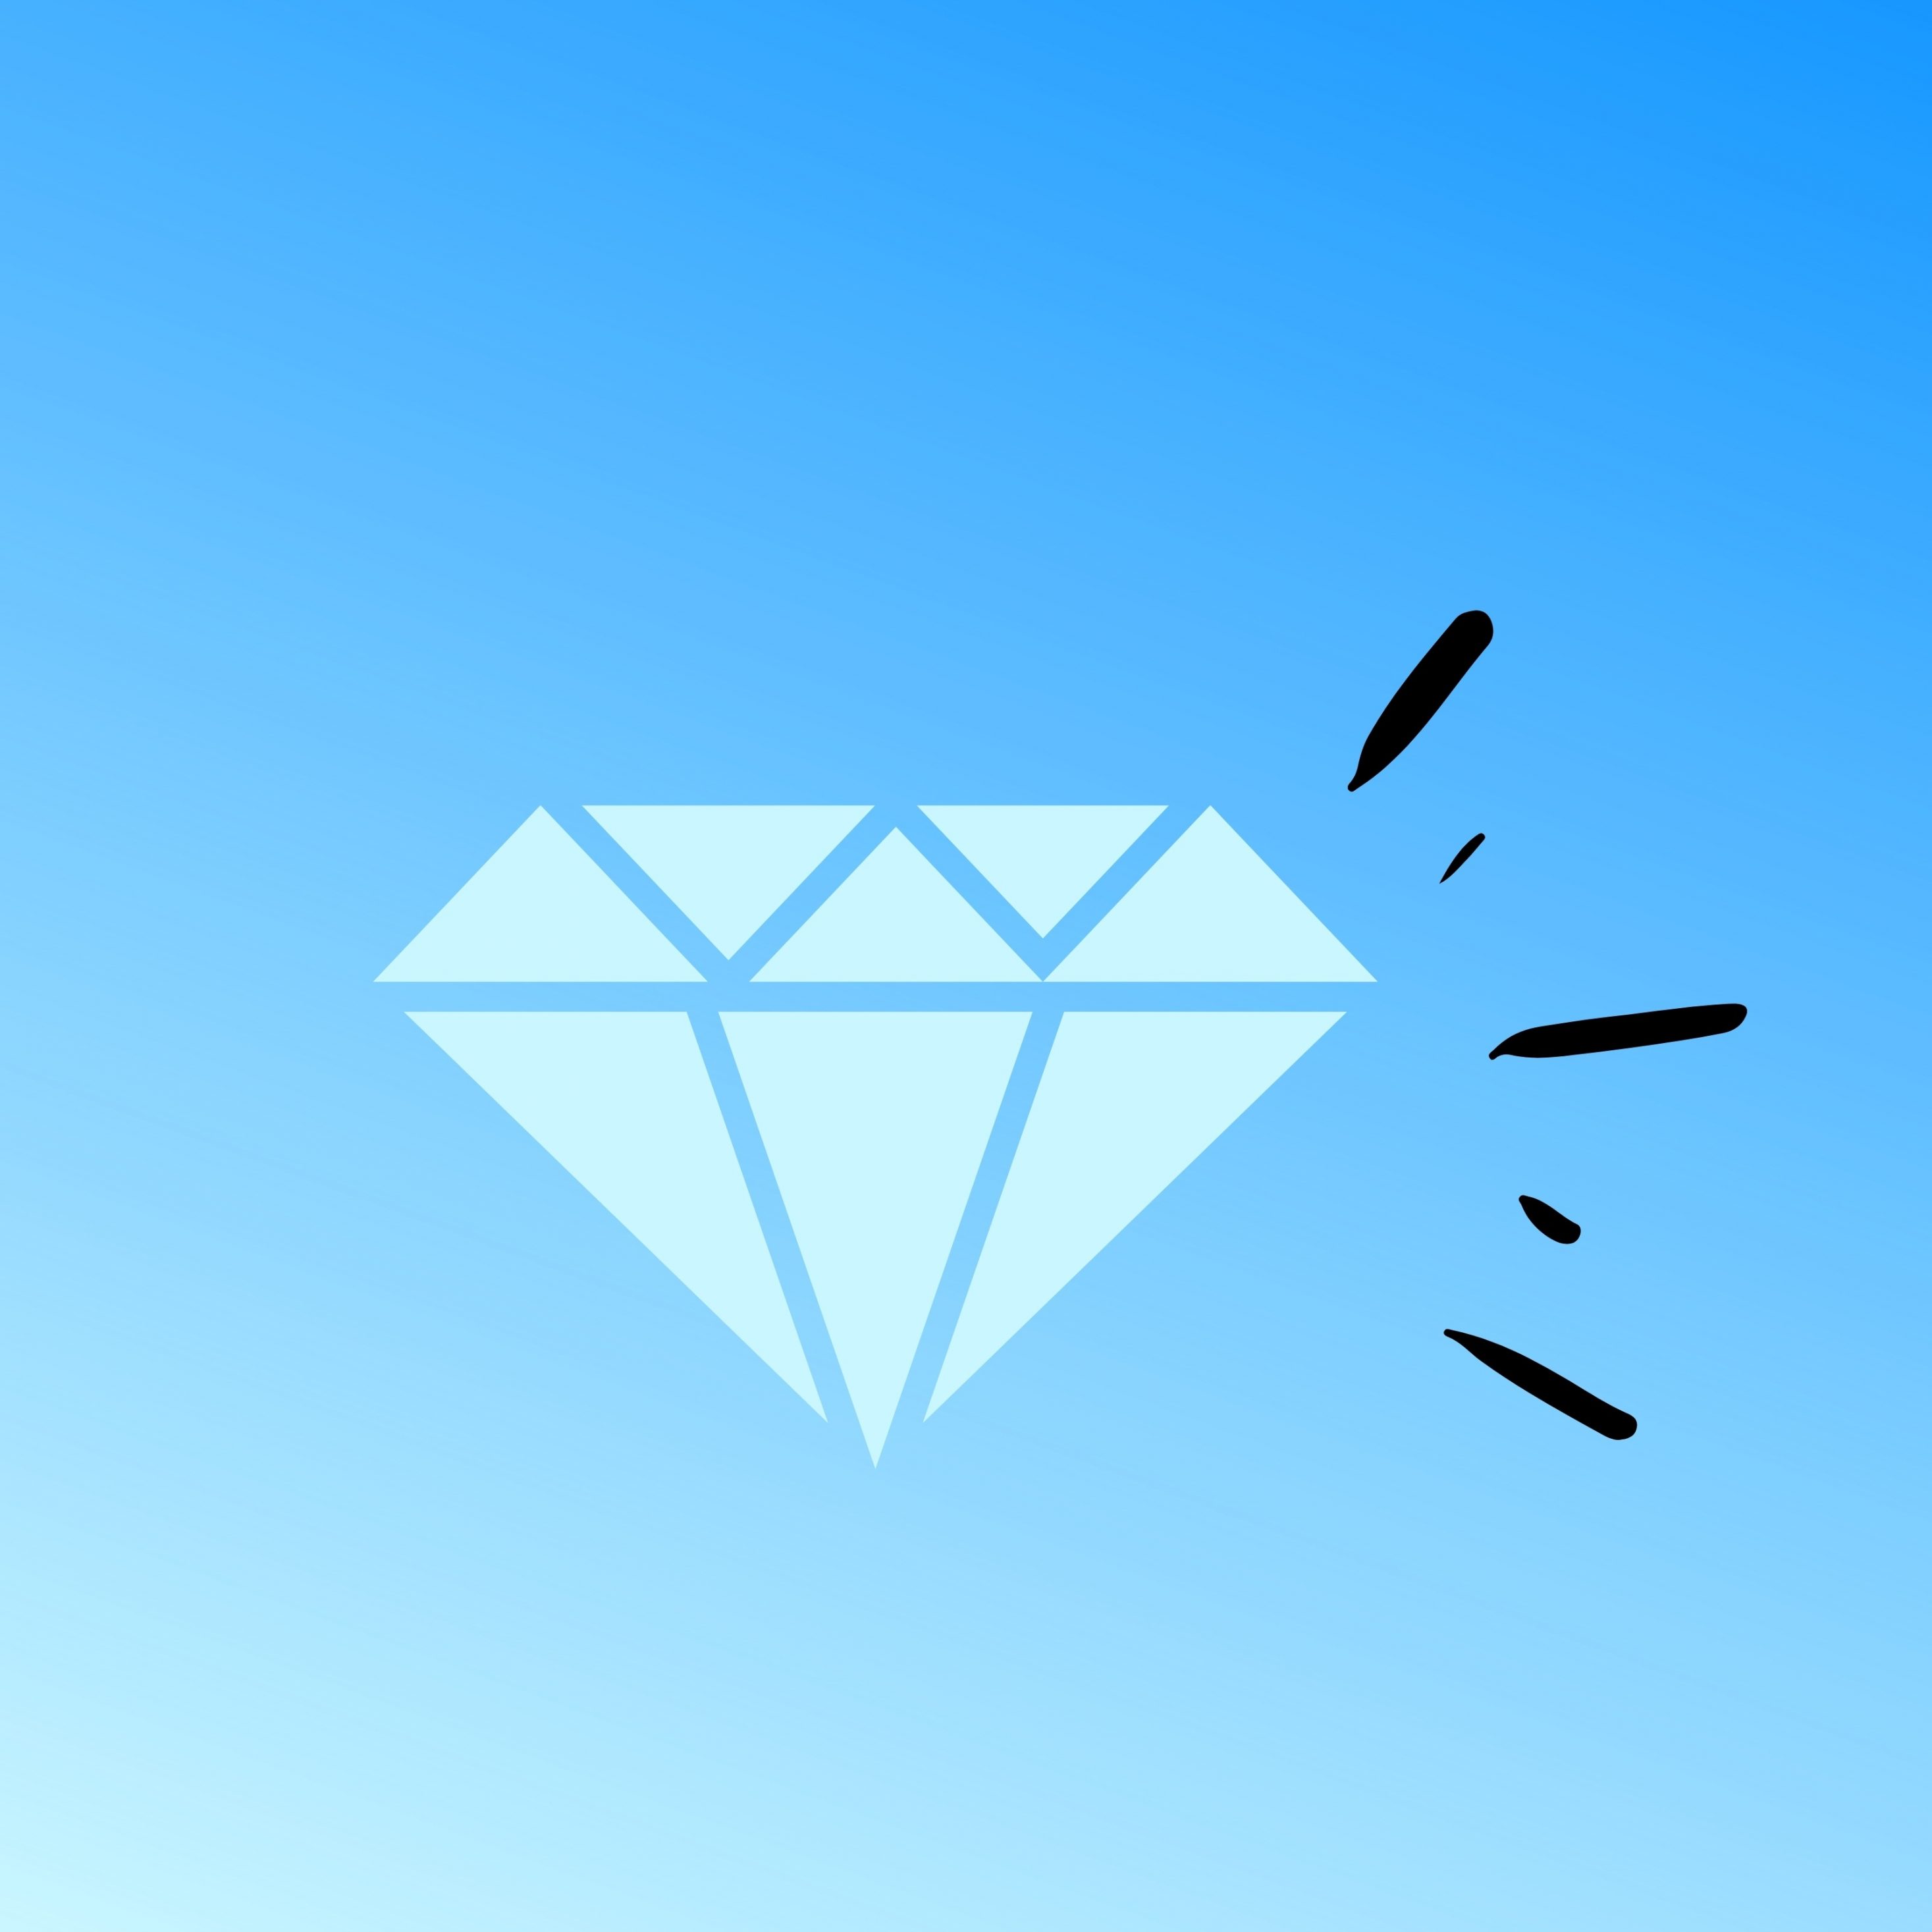 2934x2934 iOS iPad wallpaper 4k Diamond Crystal Gem Luxury Blue iPad Wallpaper 2934x2934 pixels resolution